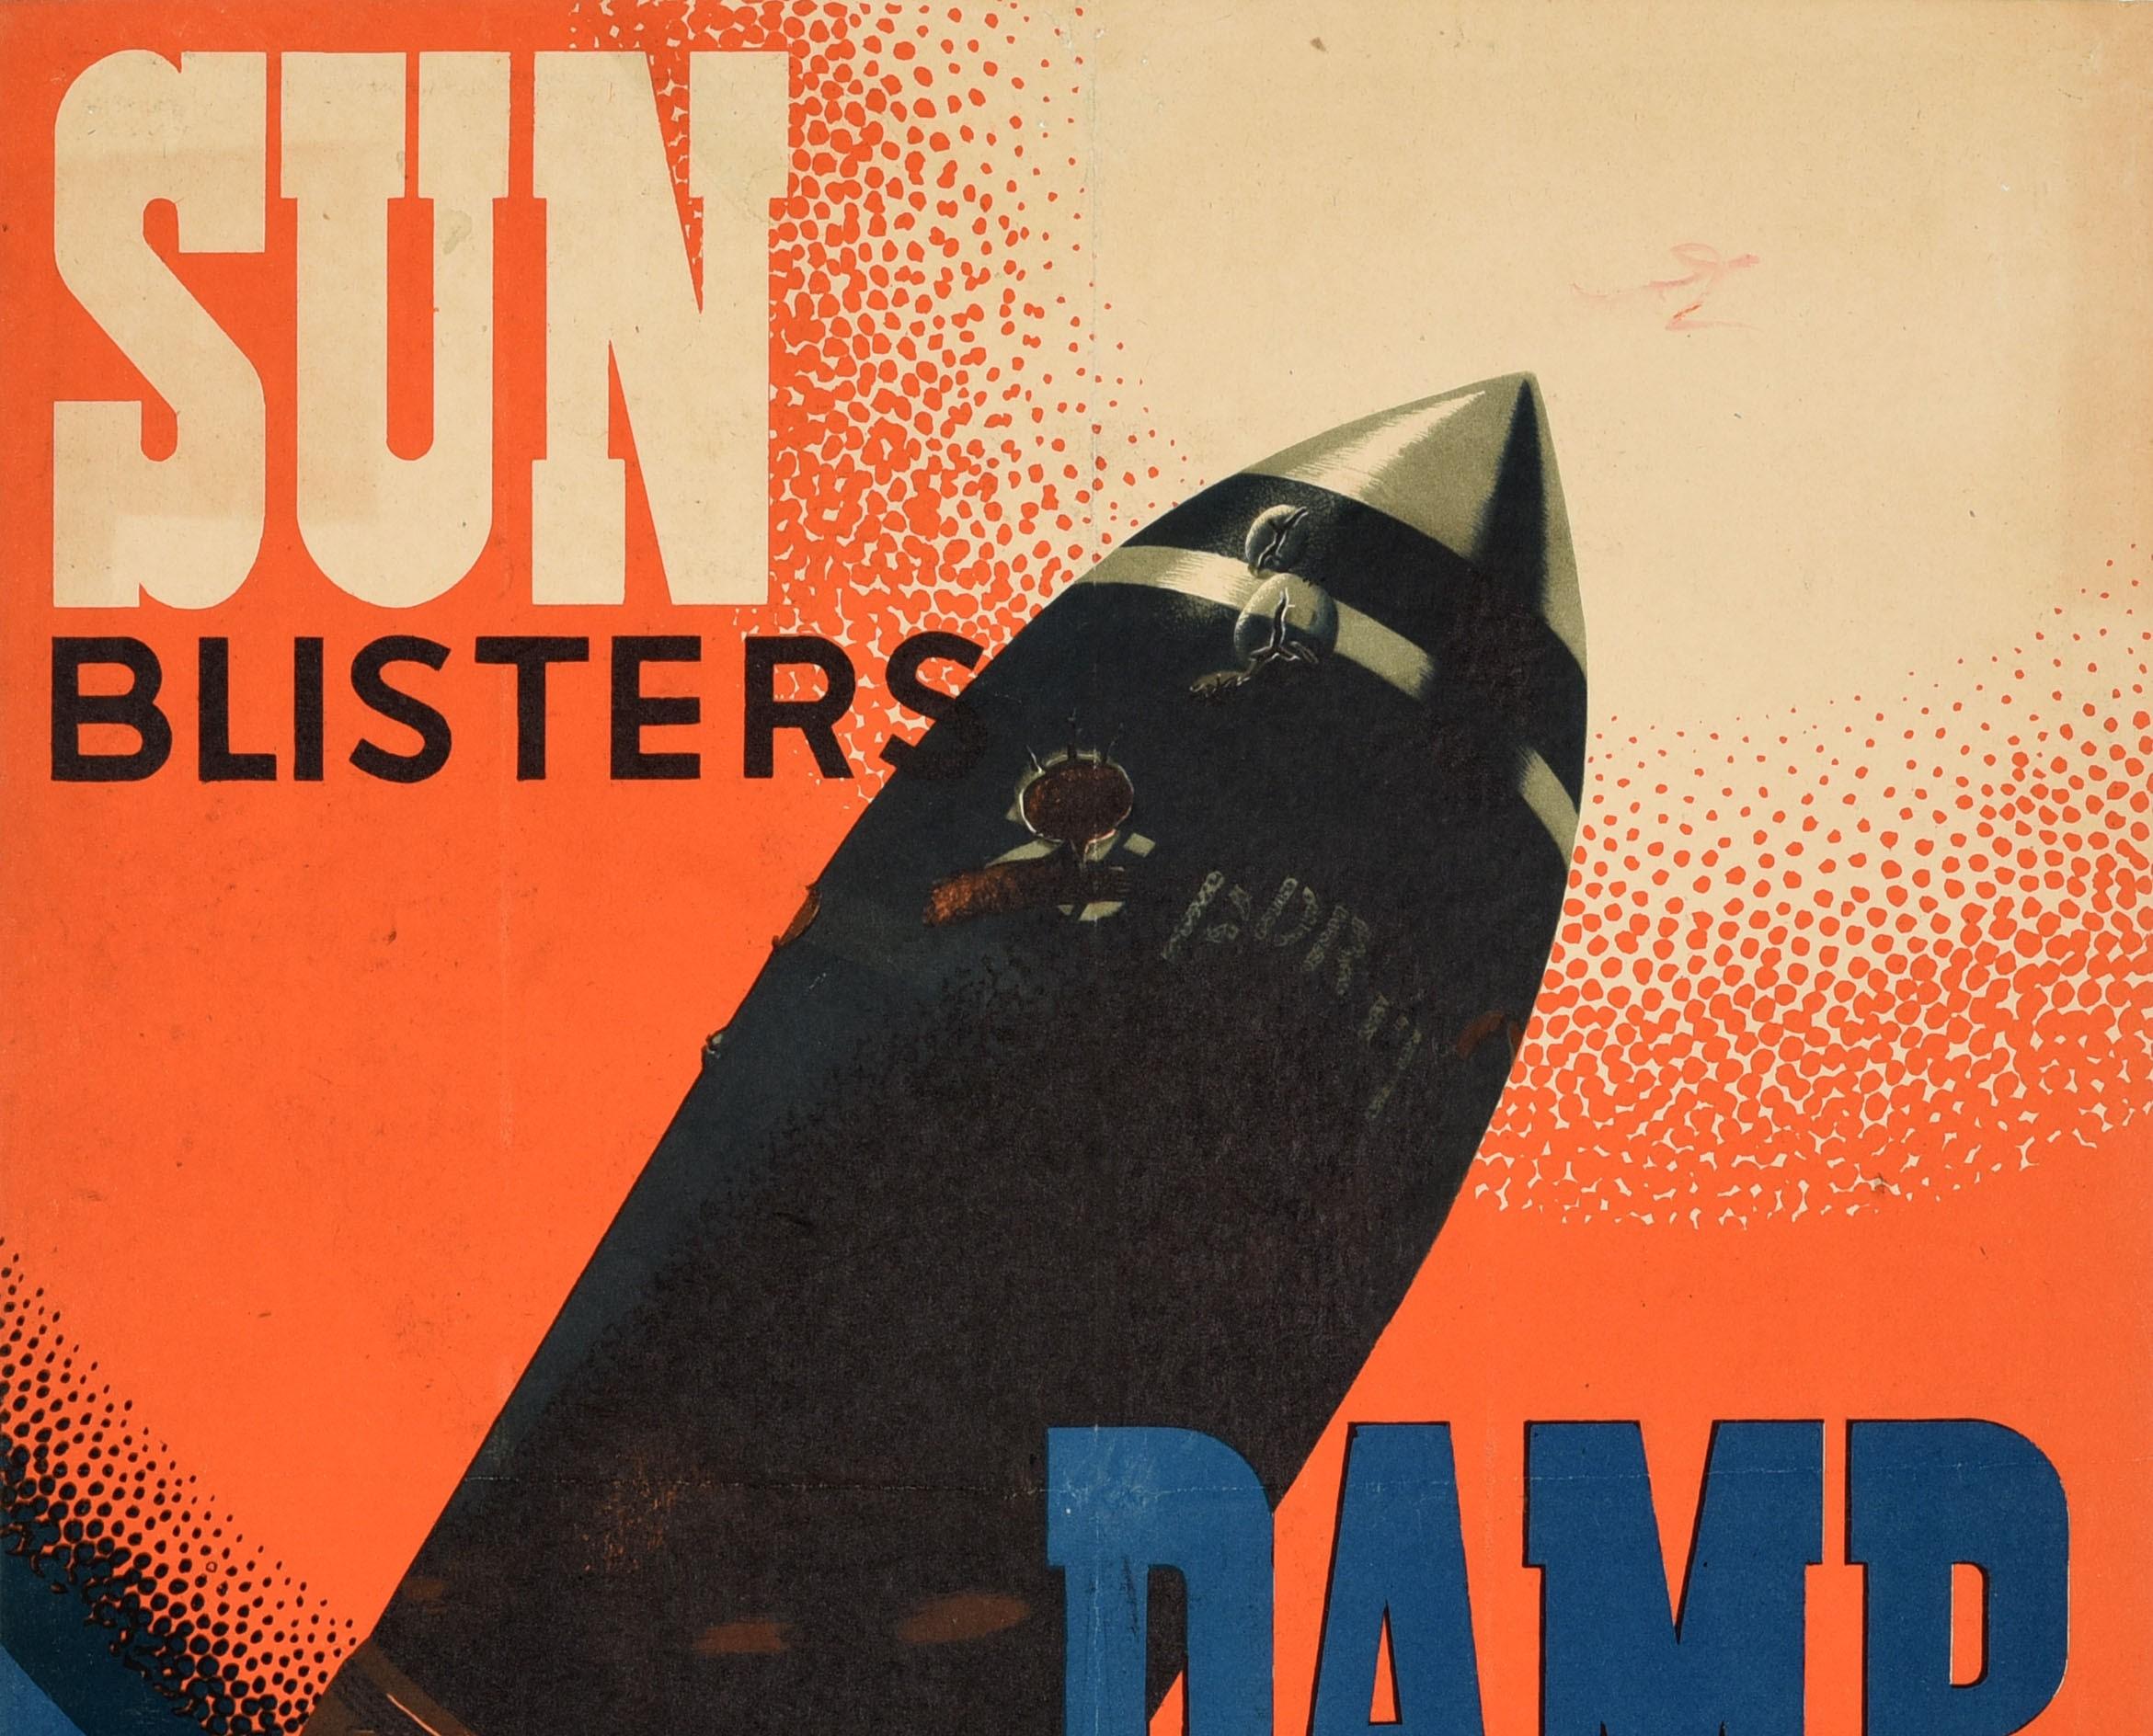 Affiche originale de propagande de sécurité datant de la Seconde Guerre mondiale - Sun Blisters Damp Rusts Ammunition Keep It Covered (soleil, cloques, humidité, rouille, munitions) - avec un dessin dynamique du célèbre affichiste britannique Frank